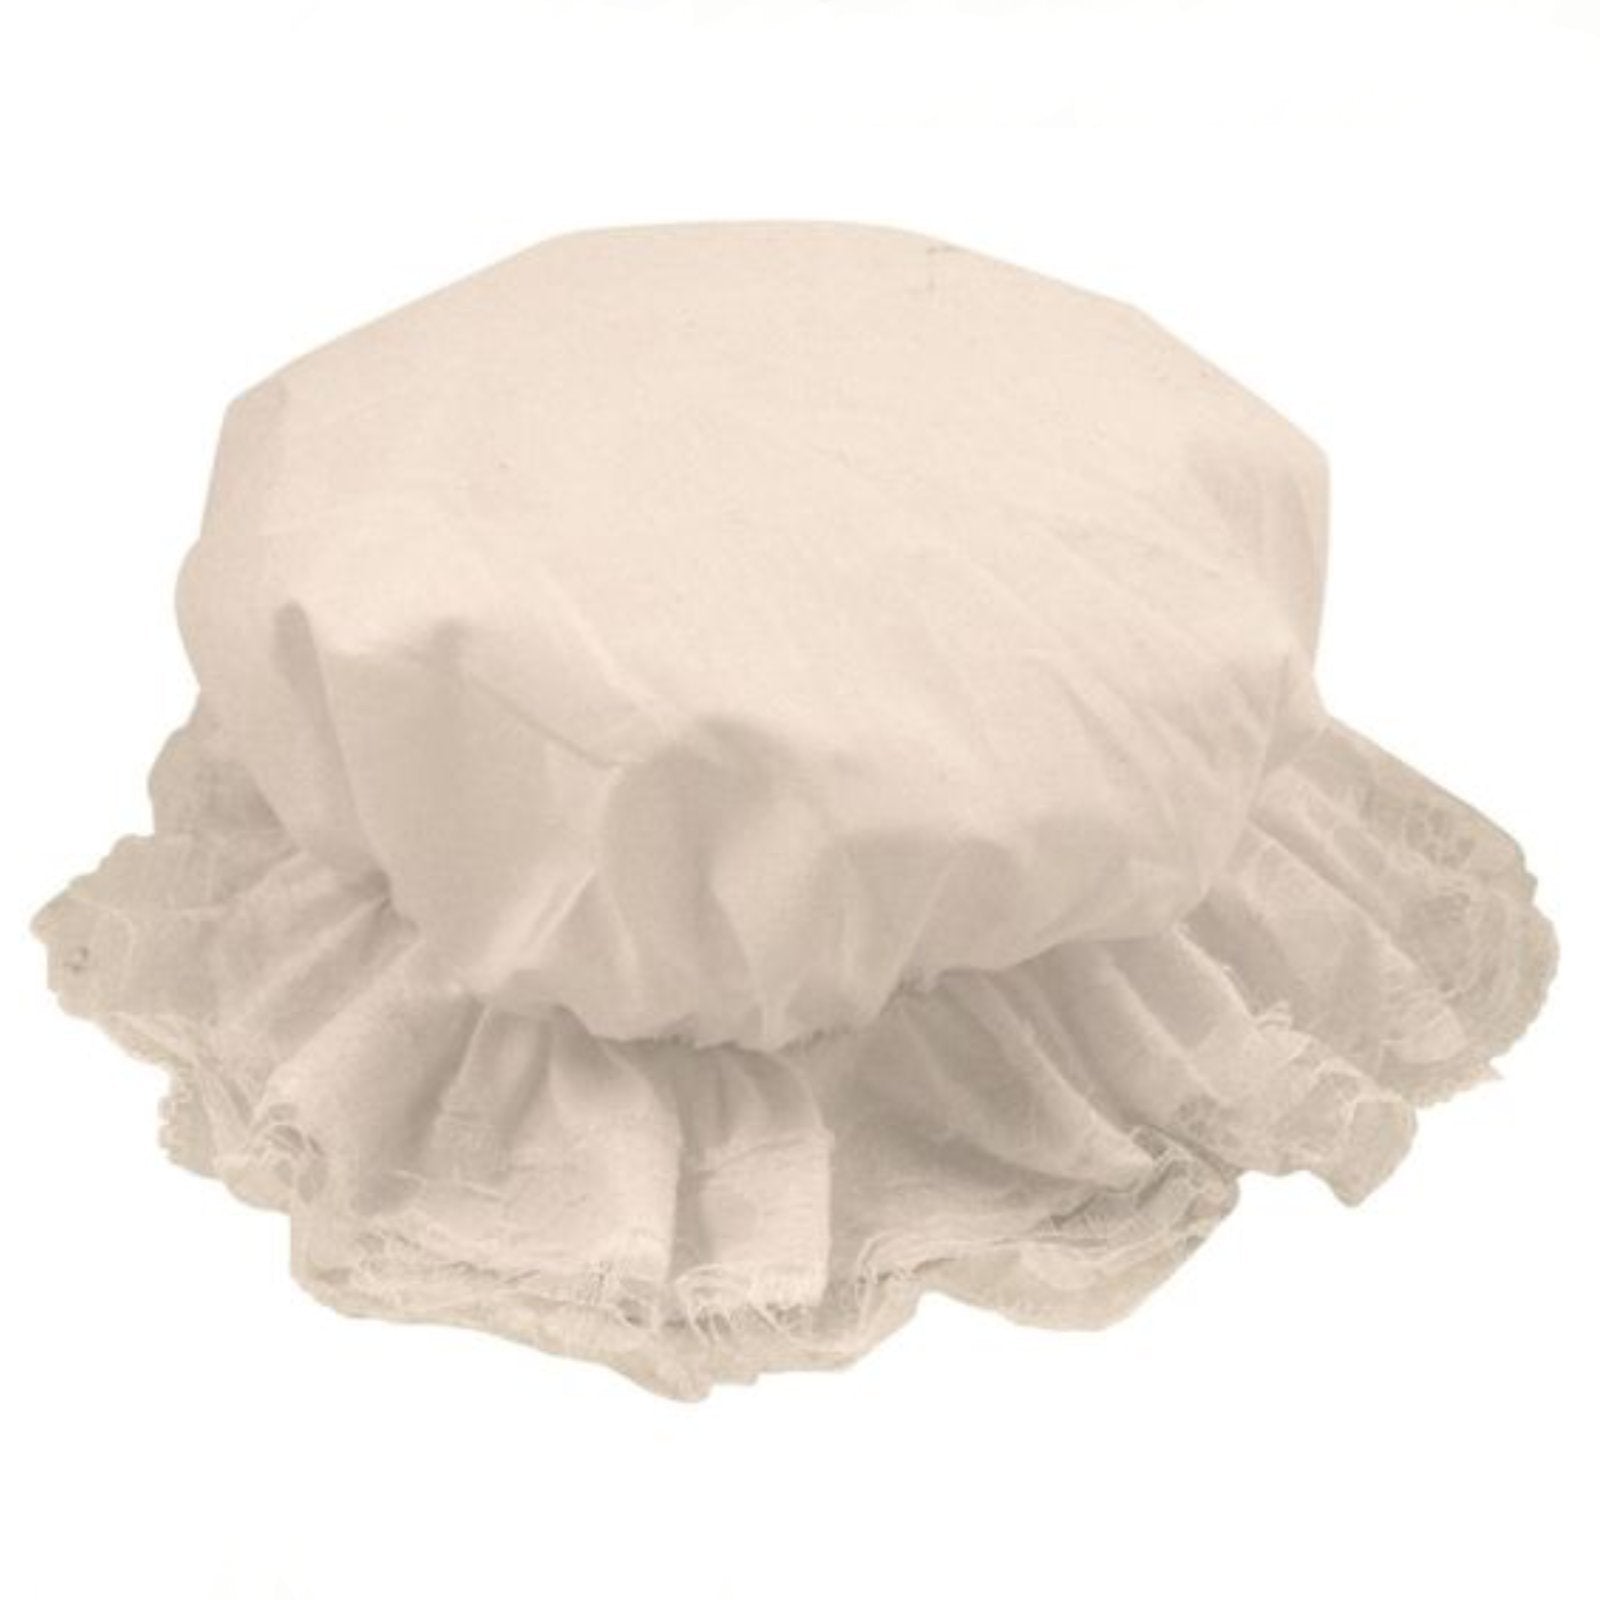 Hat Mop Maid Victorian White Bonnet Colonial Pilgrim